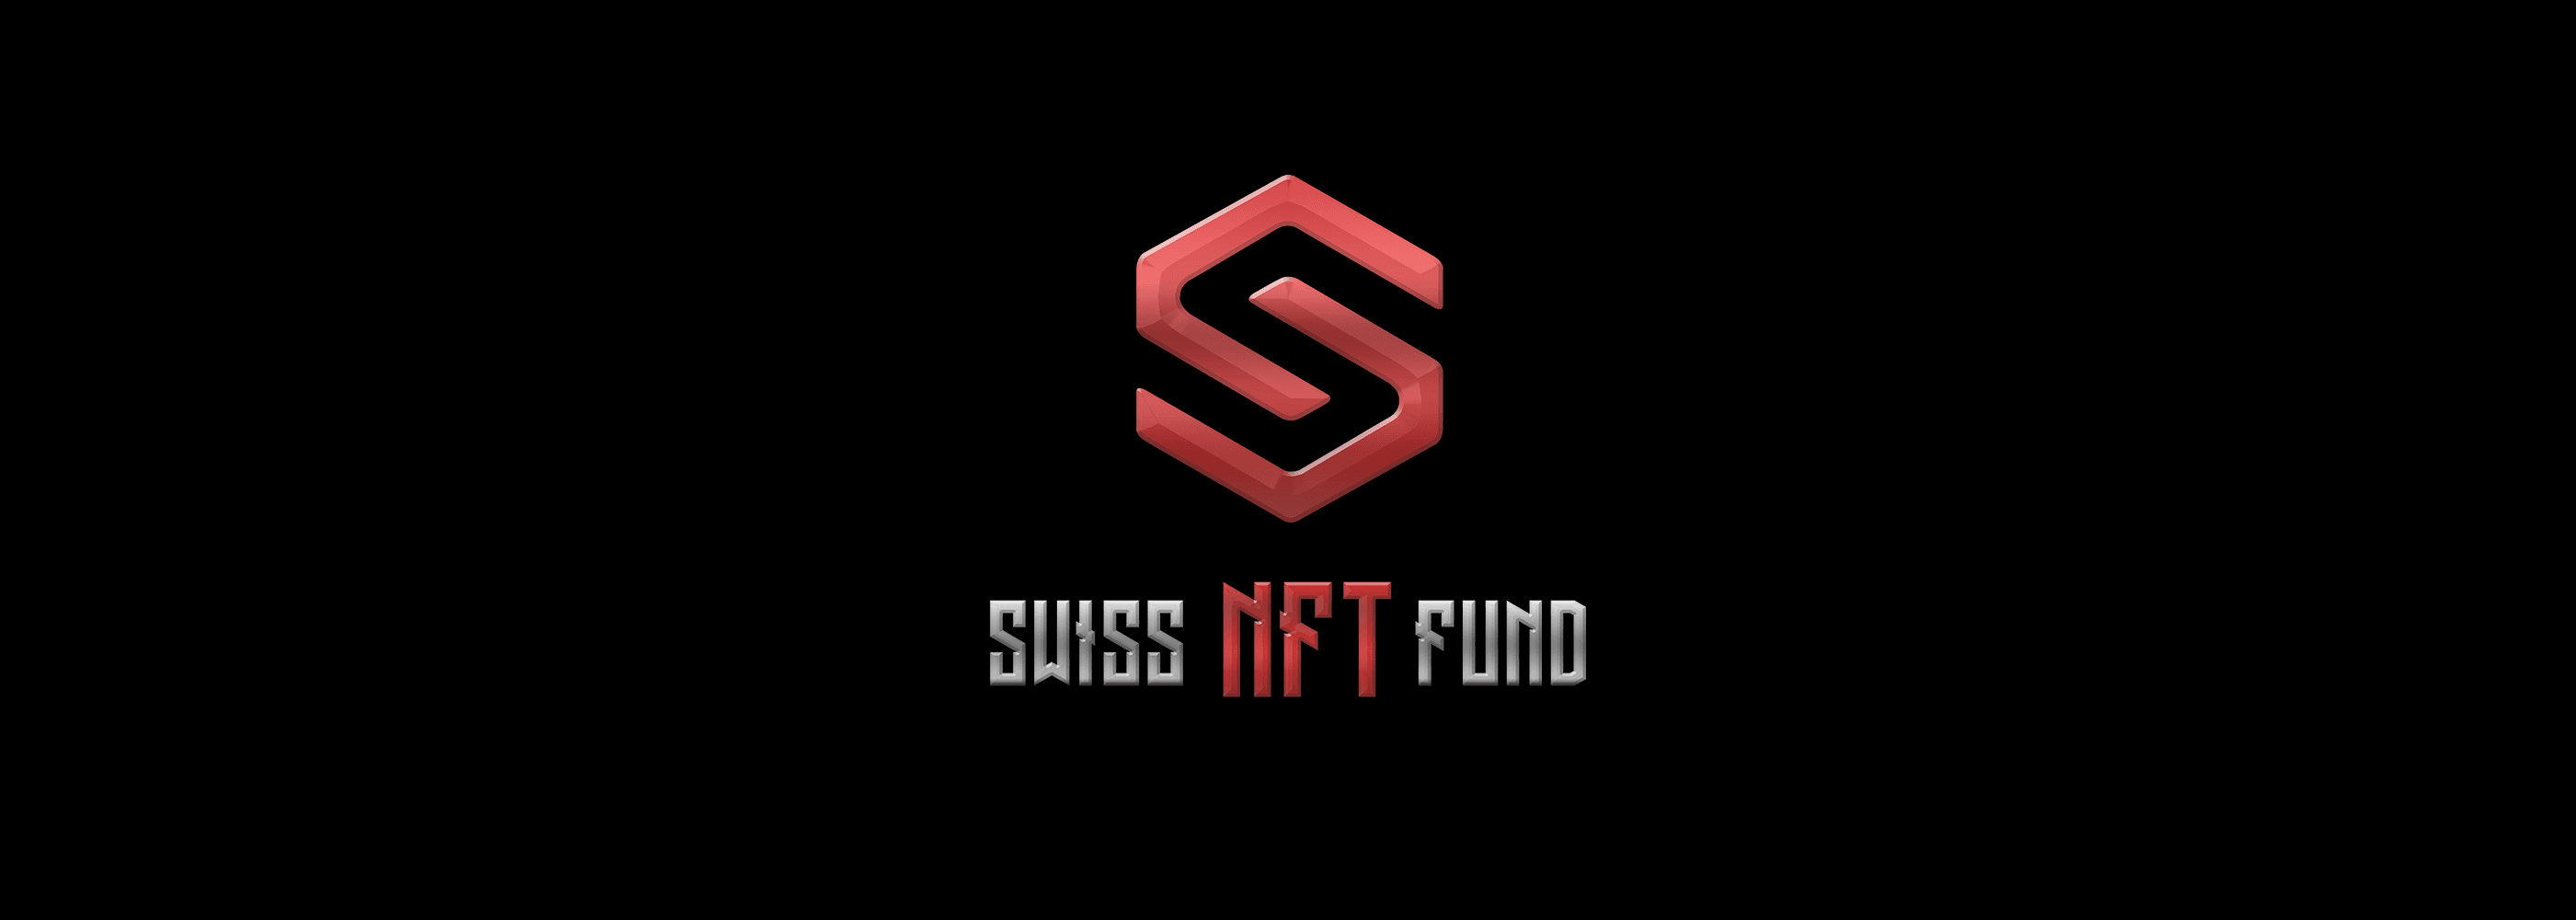 SwissNFTFund banner